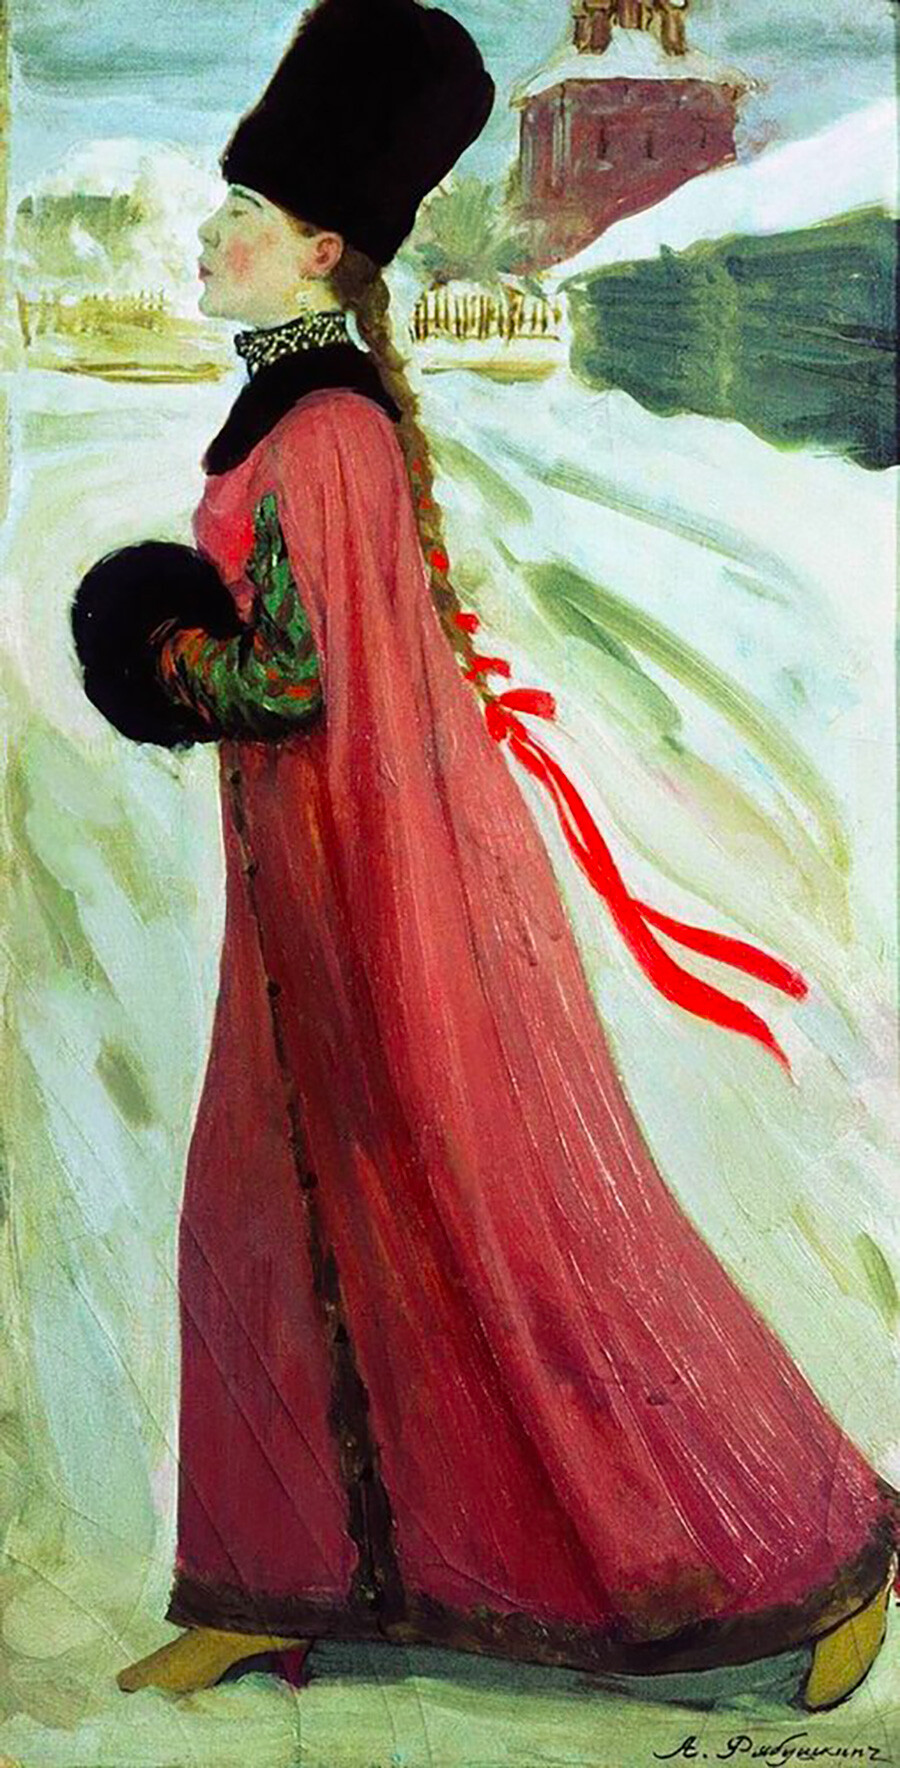 アンドレイ・リャブシキン『17世紀のボヤールの娘』1903年。女性はになって、2つのリボンが真ん中から三つ編みに織り込まれるので、婚約しているだろう。